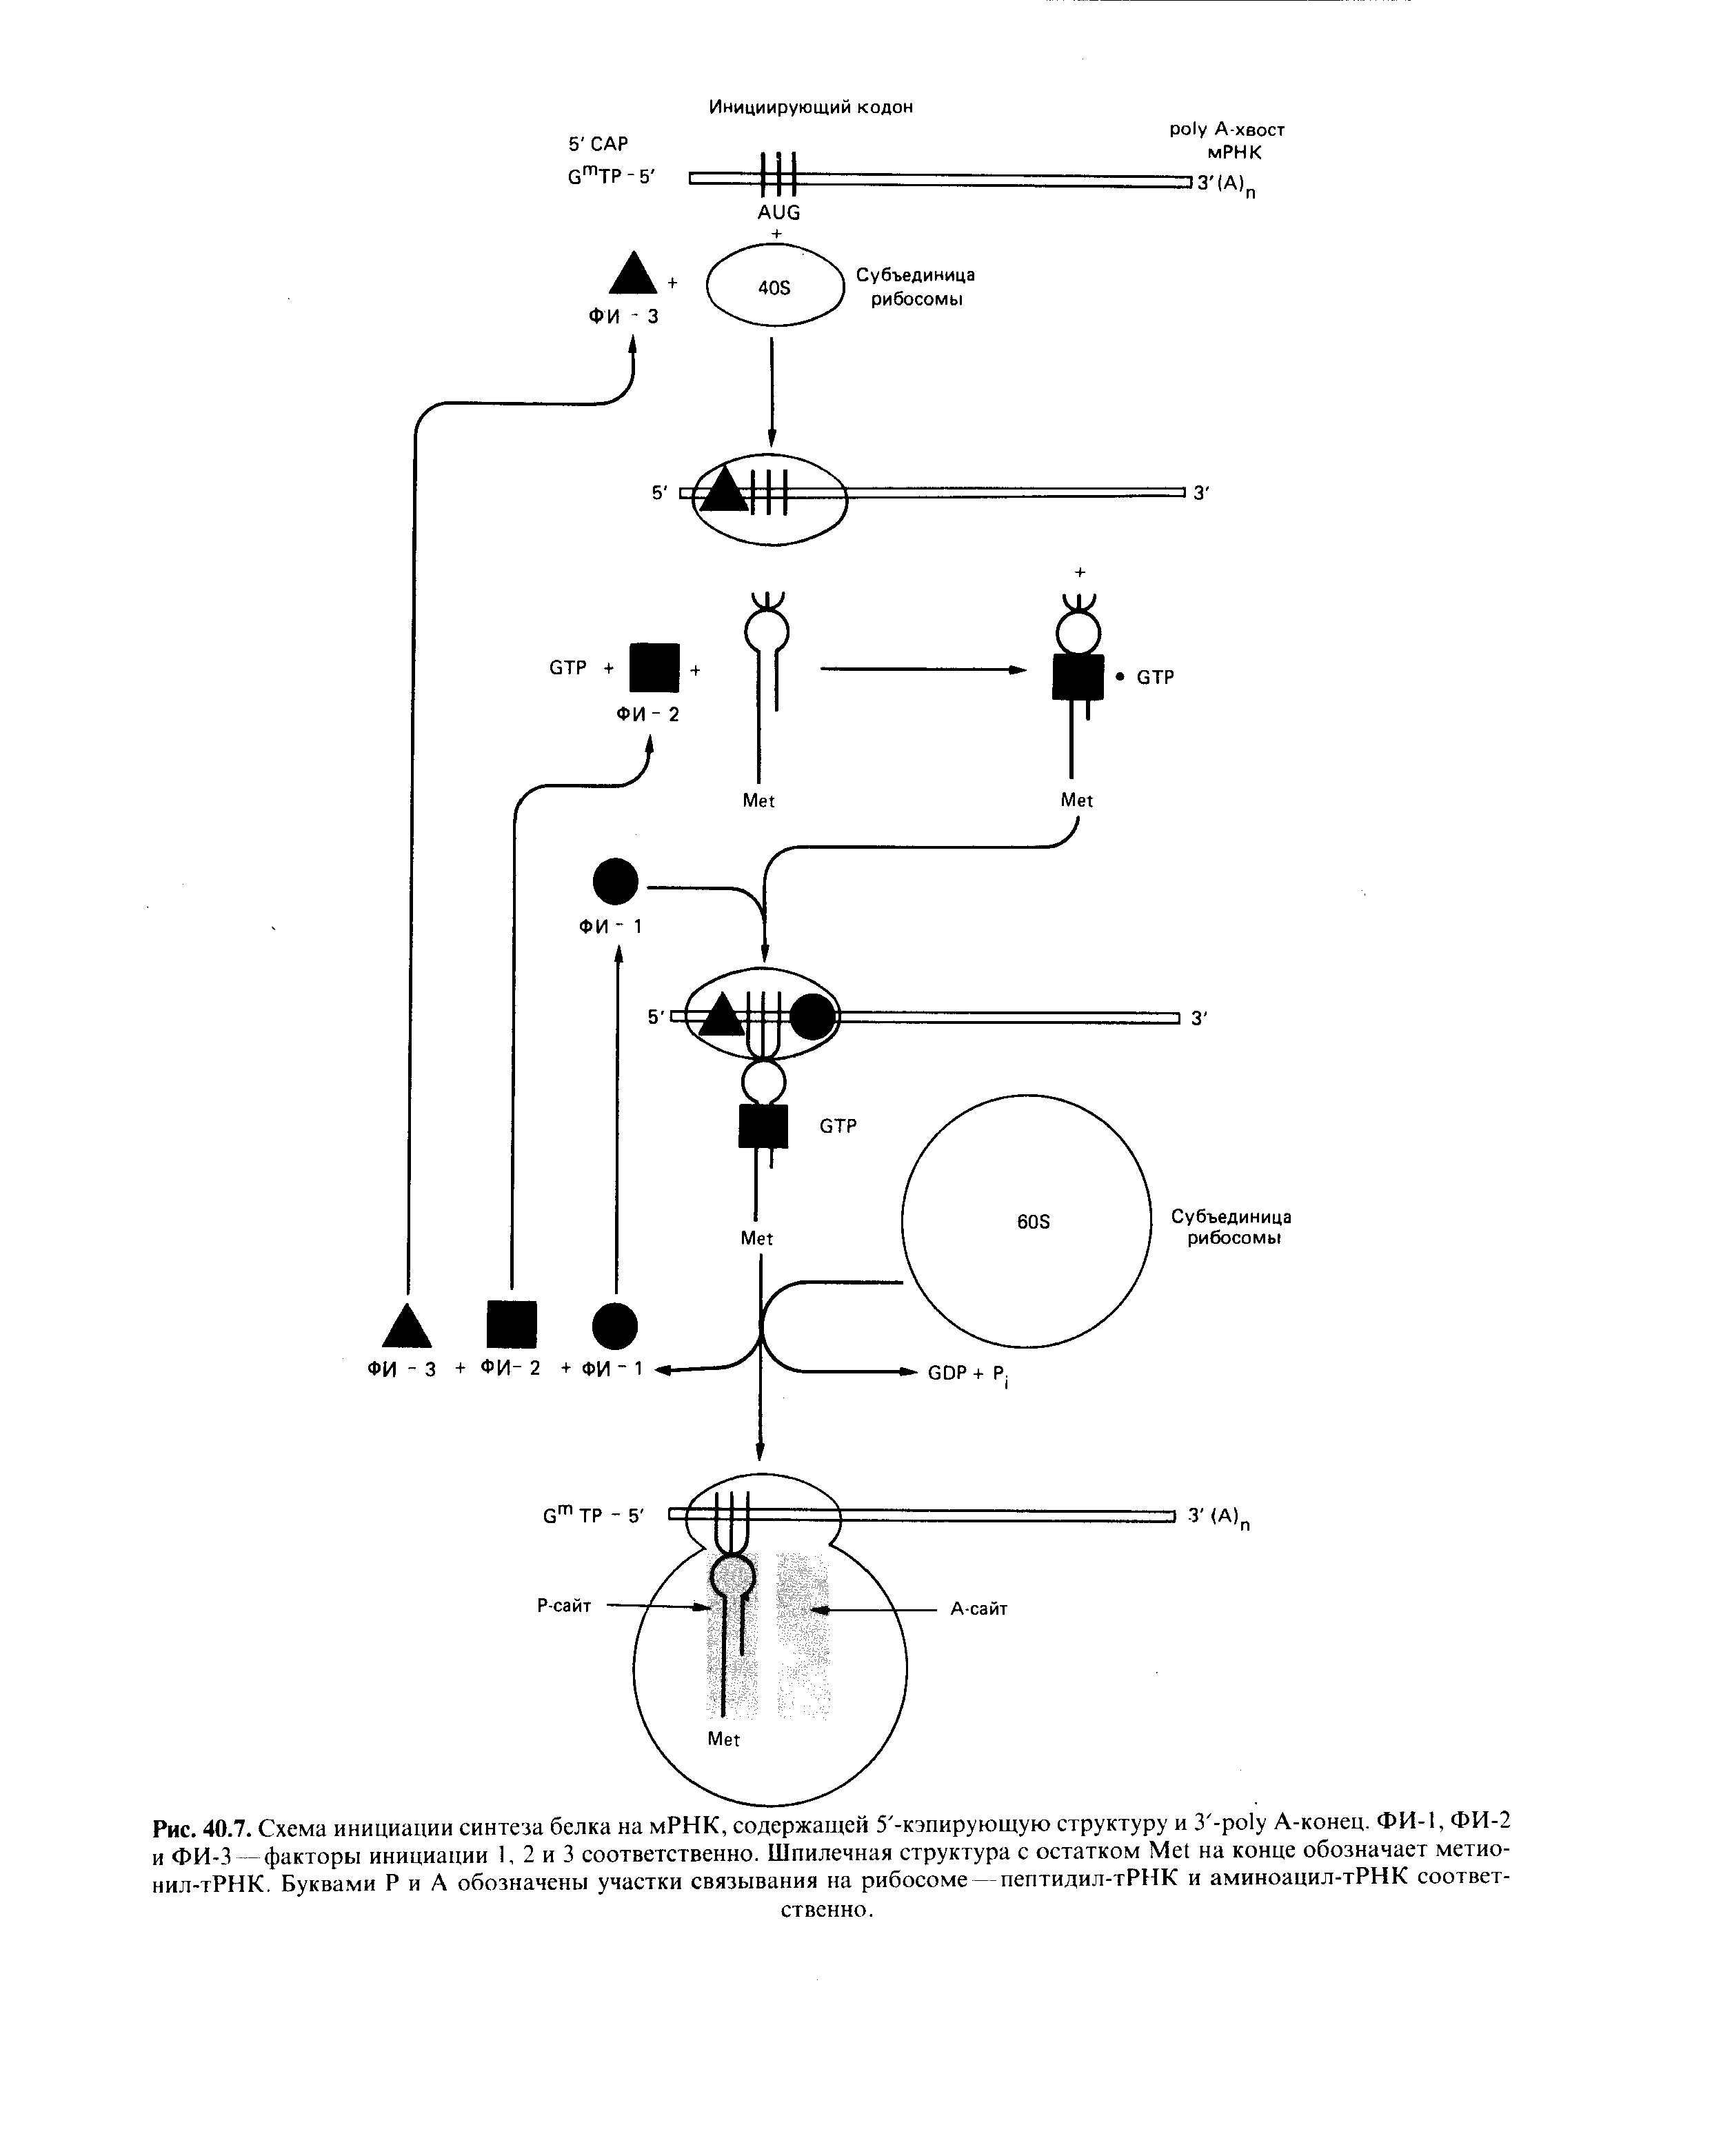 Рис. 40.7. Схема инициации синтеза белка на мРНК, содержащей 5 -кэпирующую структуру и 3 -ро1у A-конец. ФИ-1, ФИ-2 и ФИ-3 - факторы инициации 1, 2 и 3 соответственно. Шпилечная структура с остатком M на конце обозначает метио-нил-тРНК. Буквами Р и А обозначены участки связывания на рибосоме — пептидил-тРНК и аминоацил-тРНК соответственно.